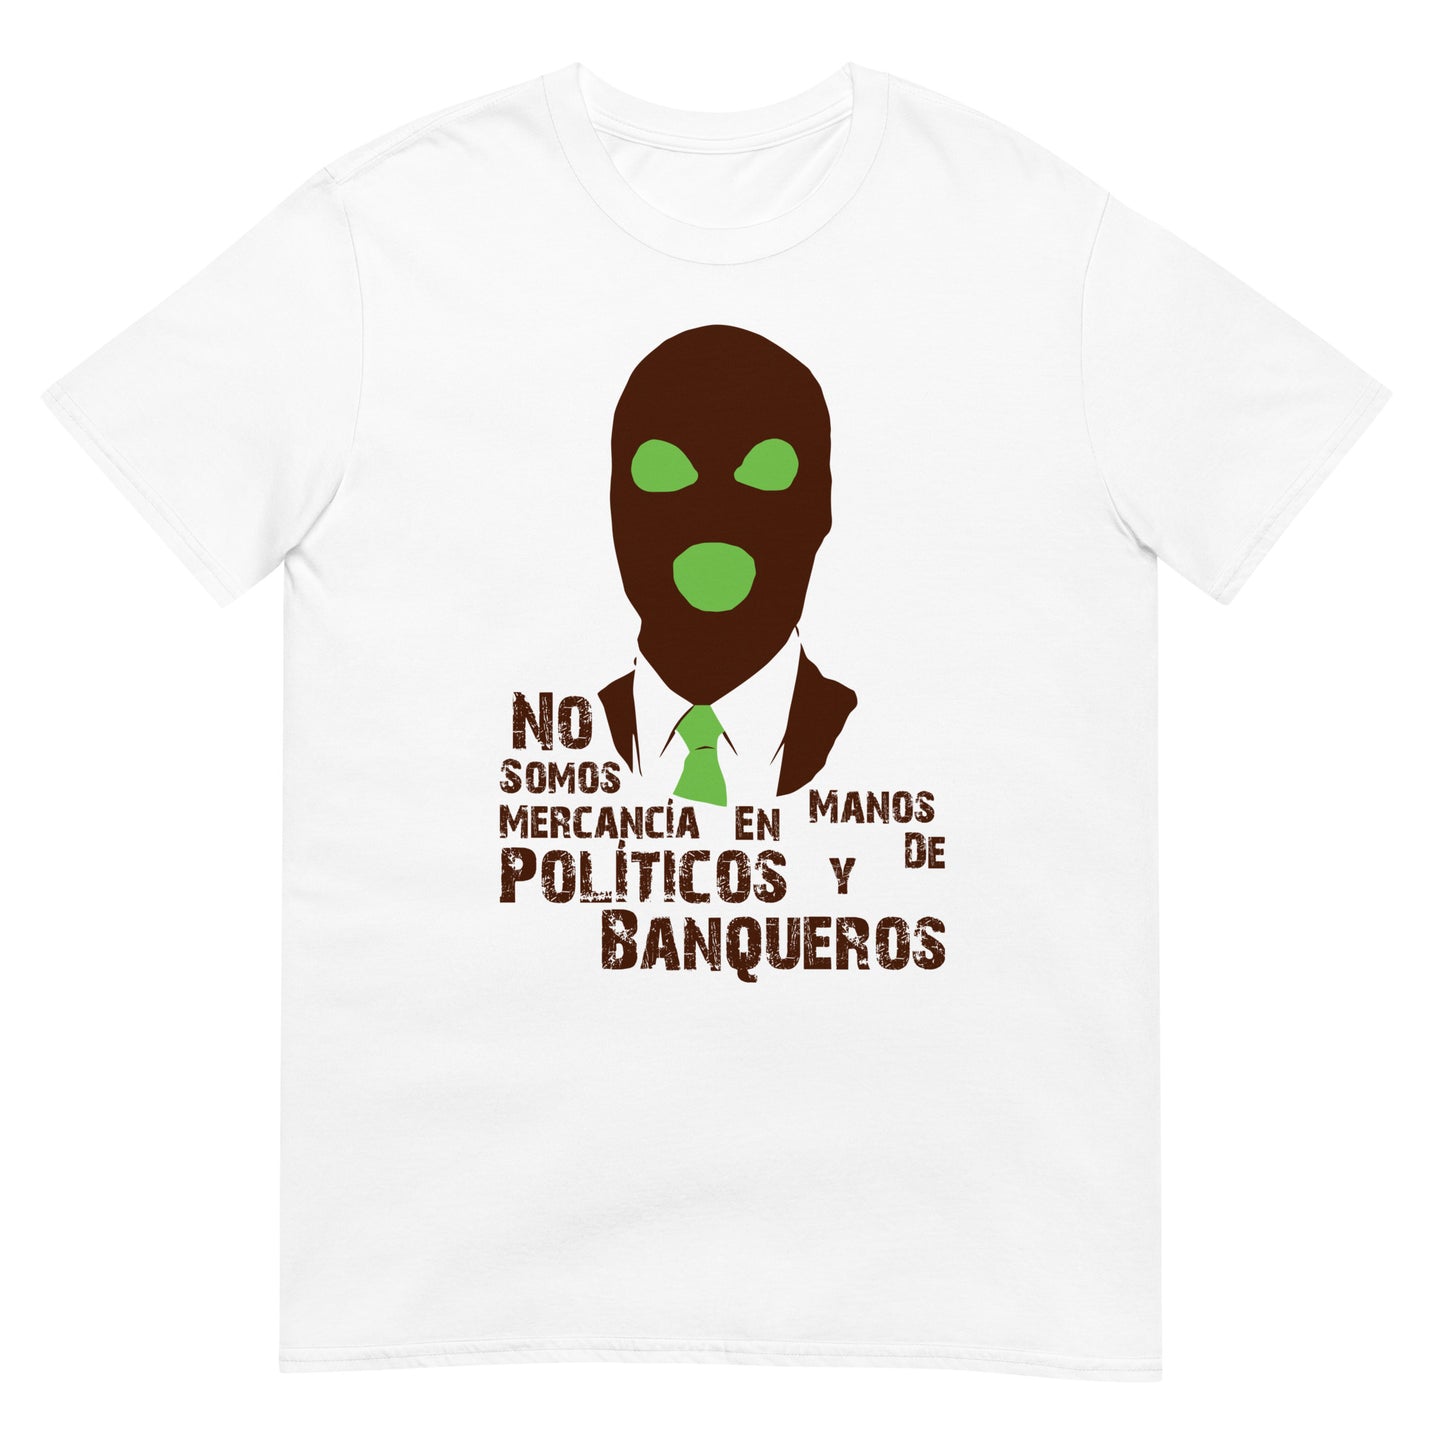 Camiseta No somos Mercancía en manos de Político y Banqueros